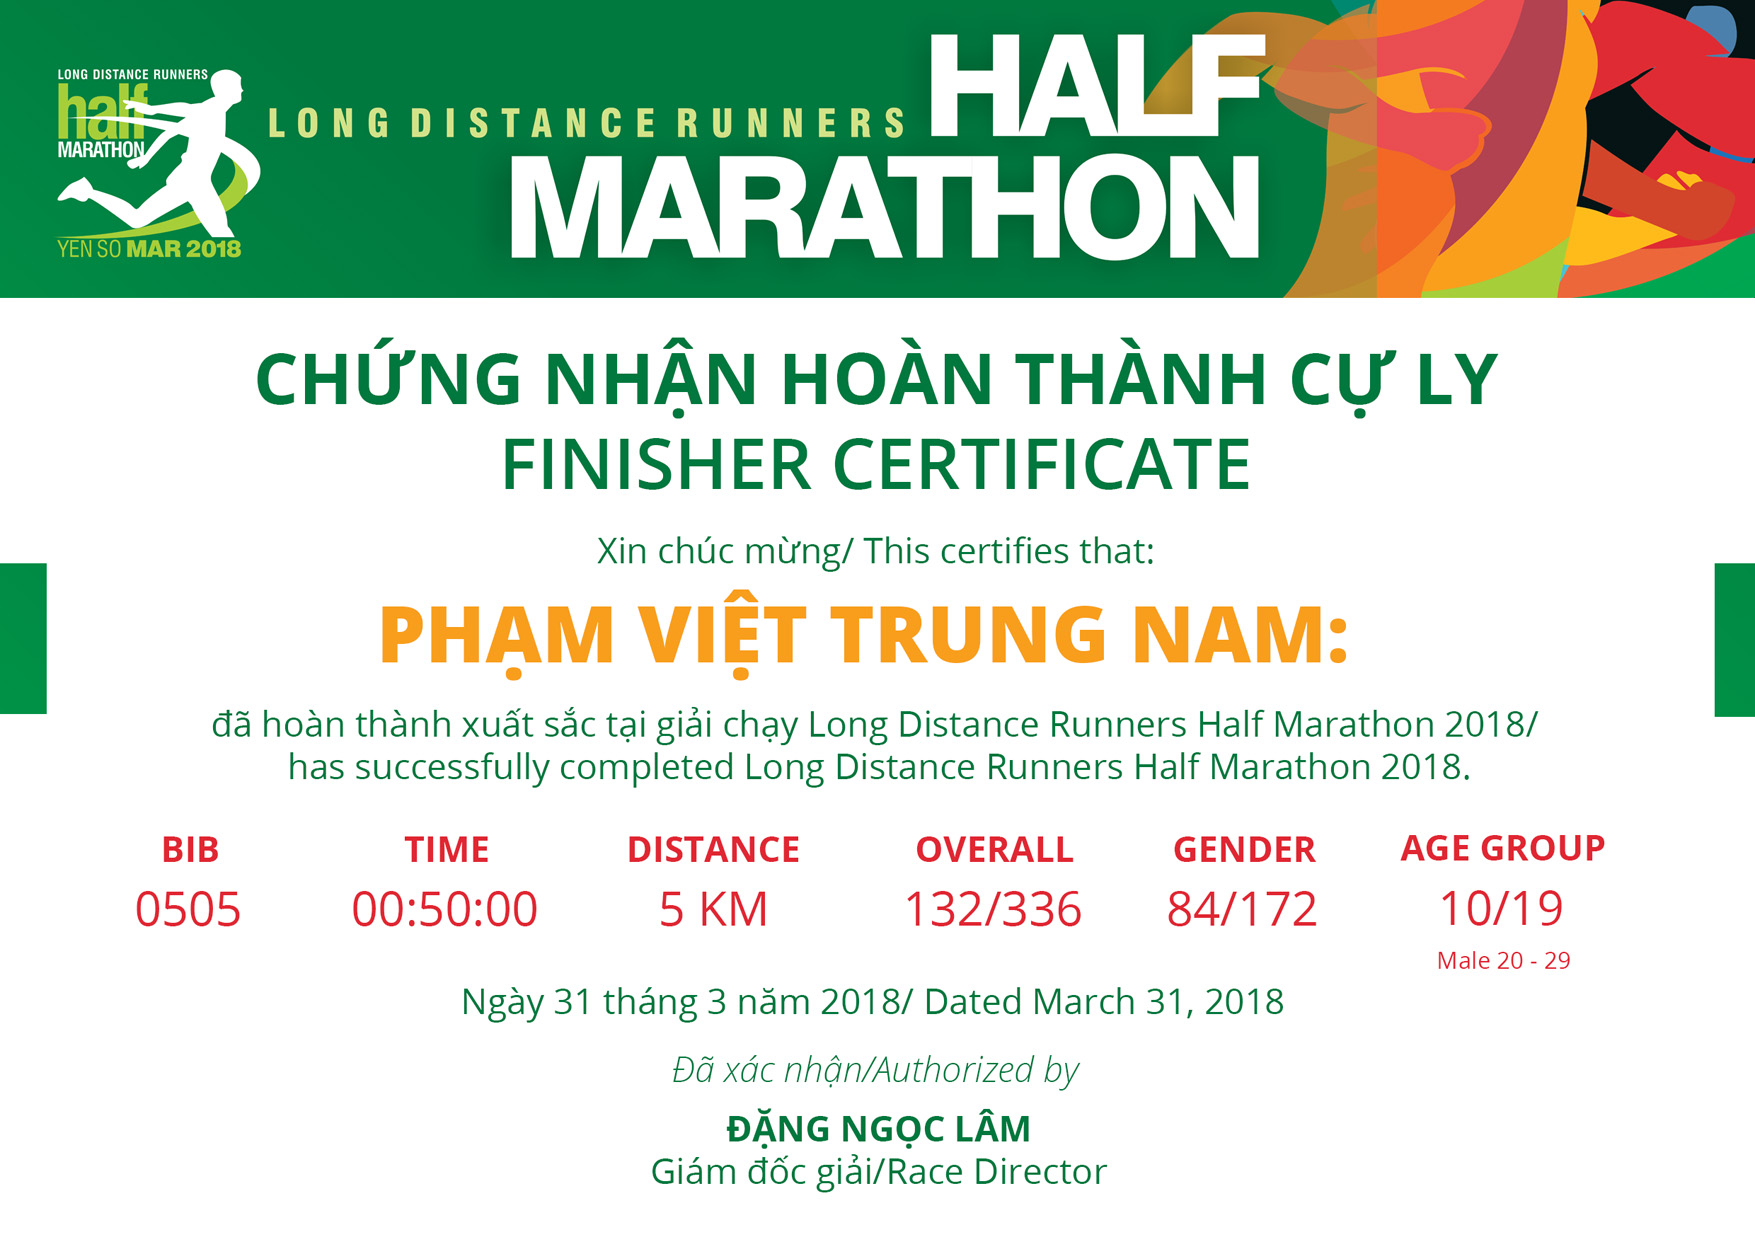 0505 - Phạm Việt Trung Nam: